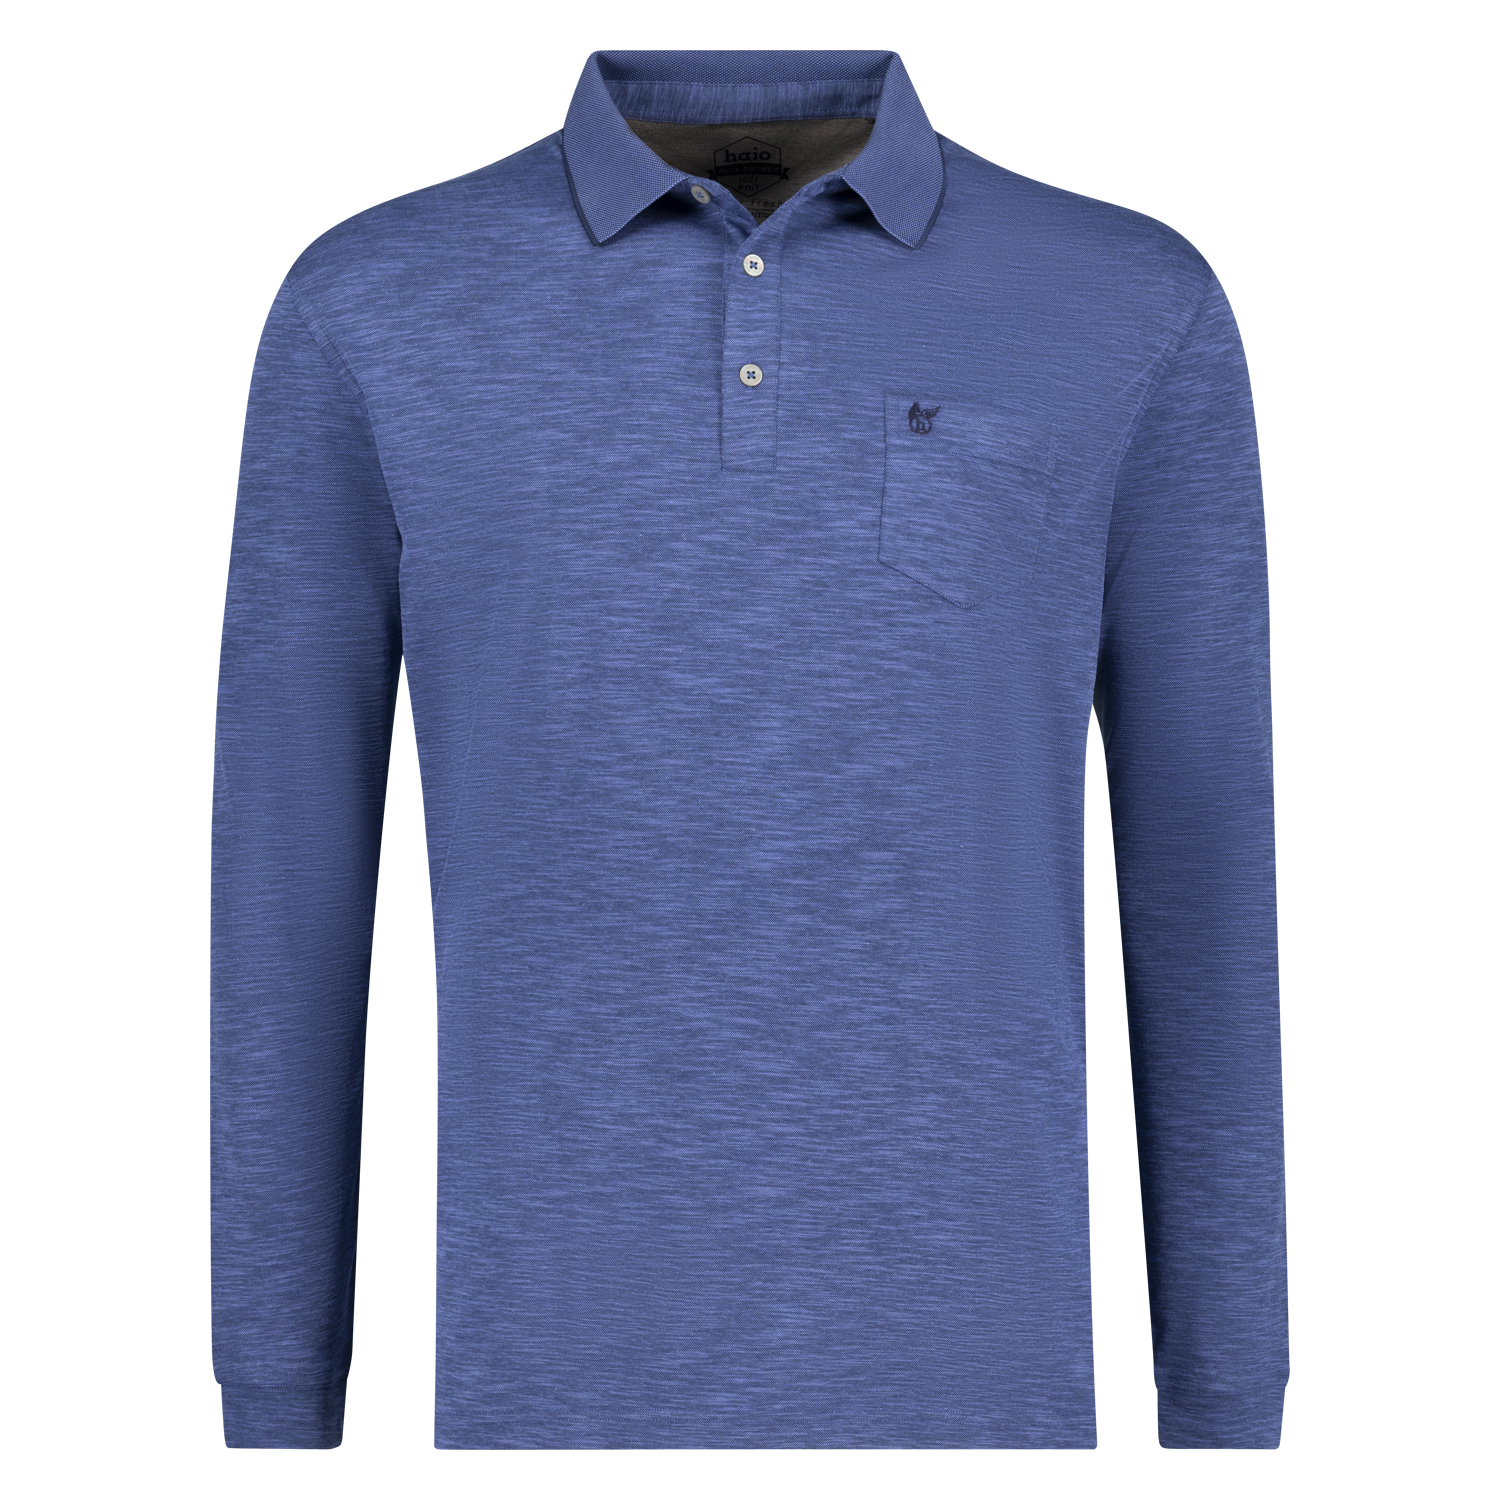 "Softknit" Herren Langarmpoloshirt in blau Übergrößen 3XL bis 6XL von Hajo